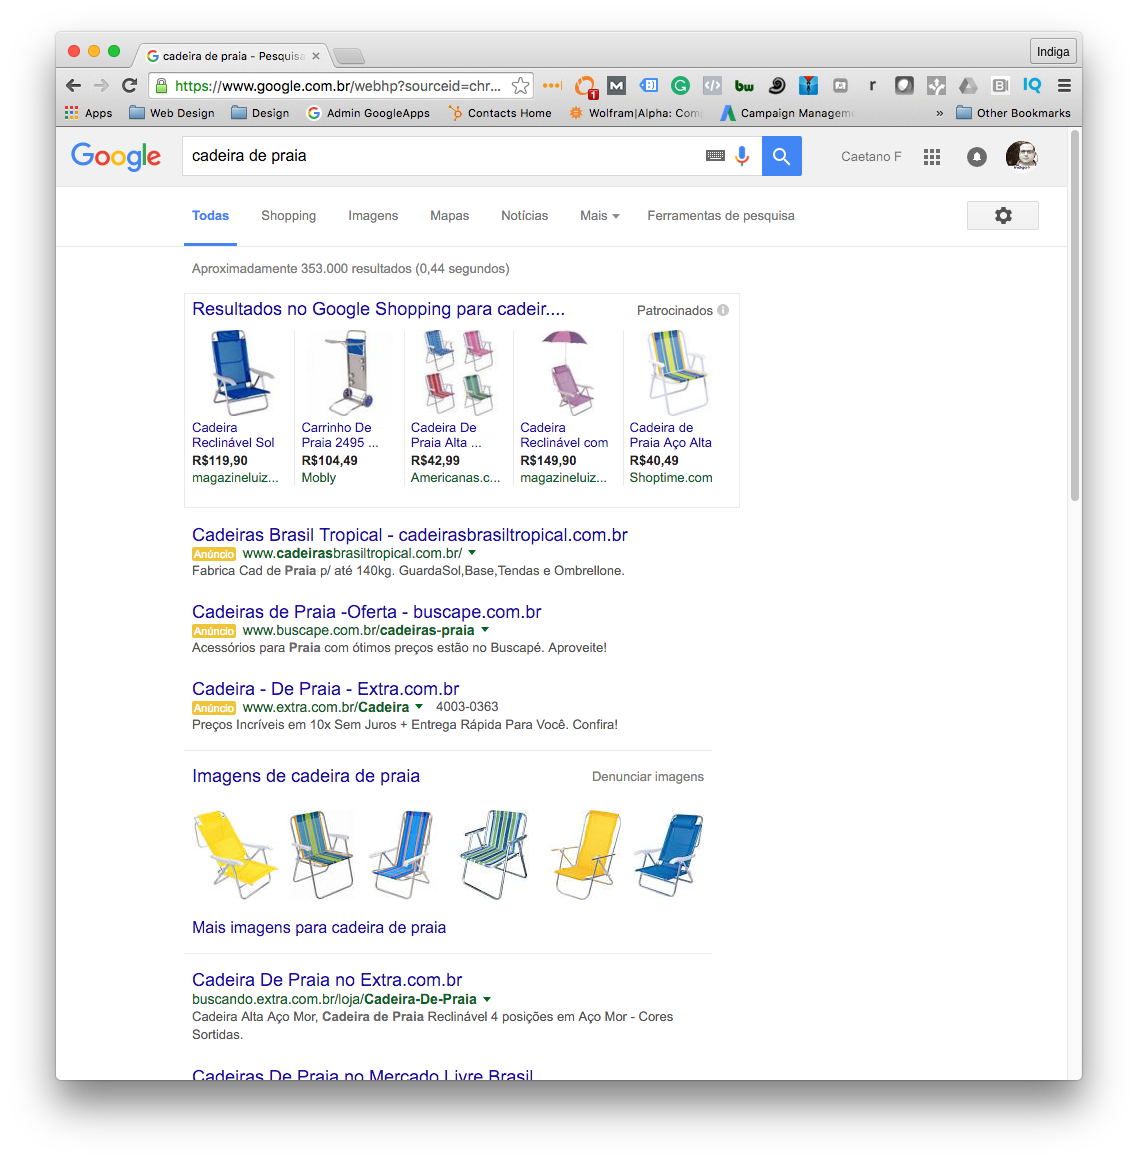 Google-shopping-exemplo-indiga